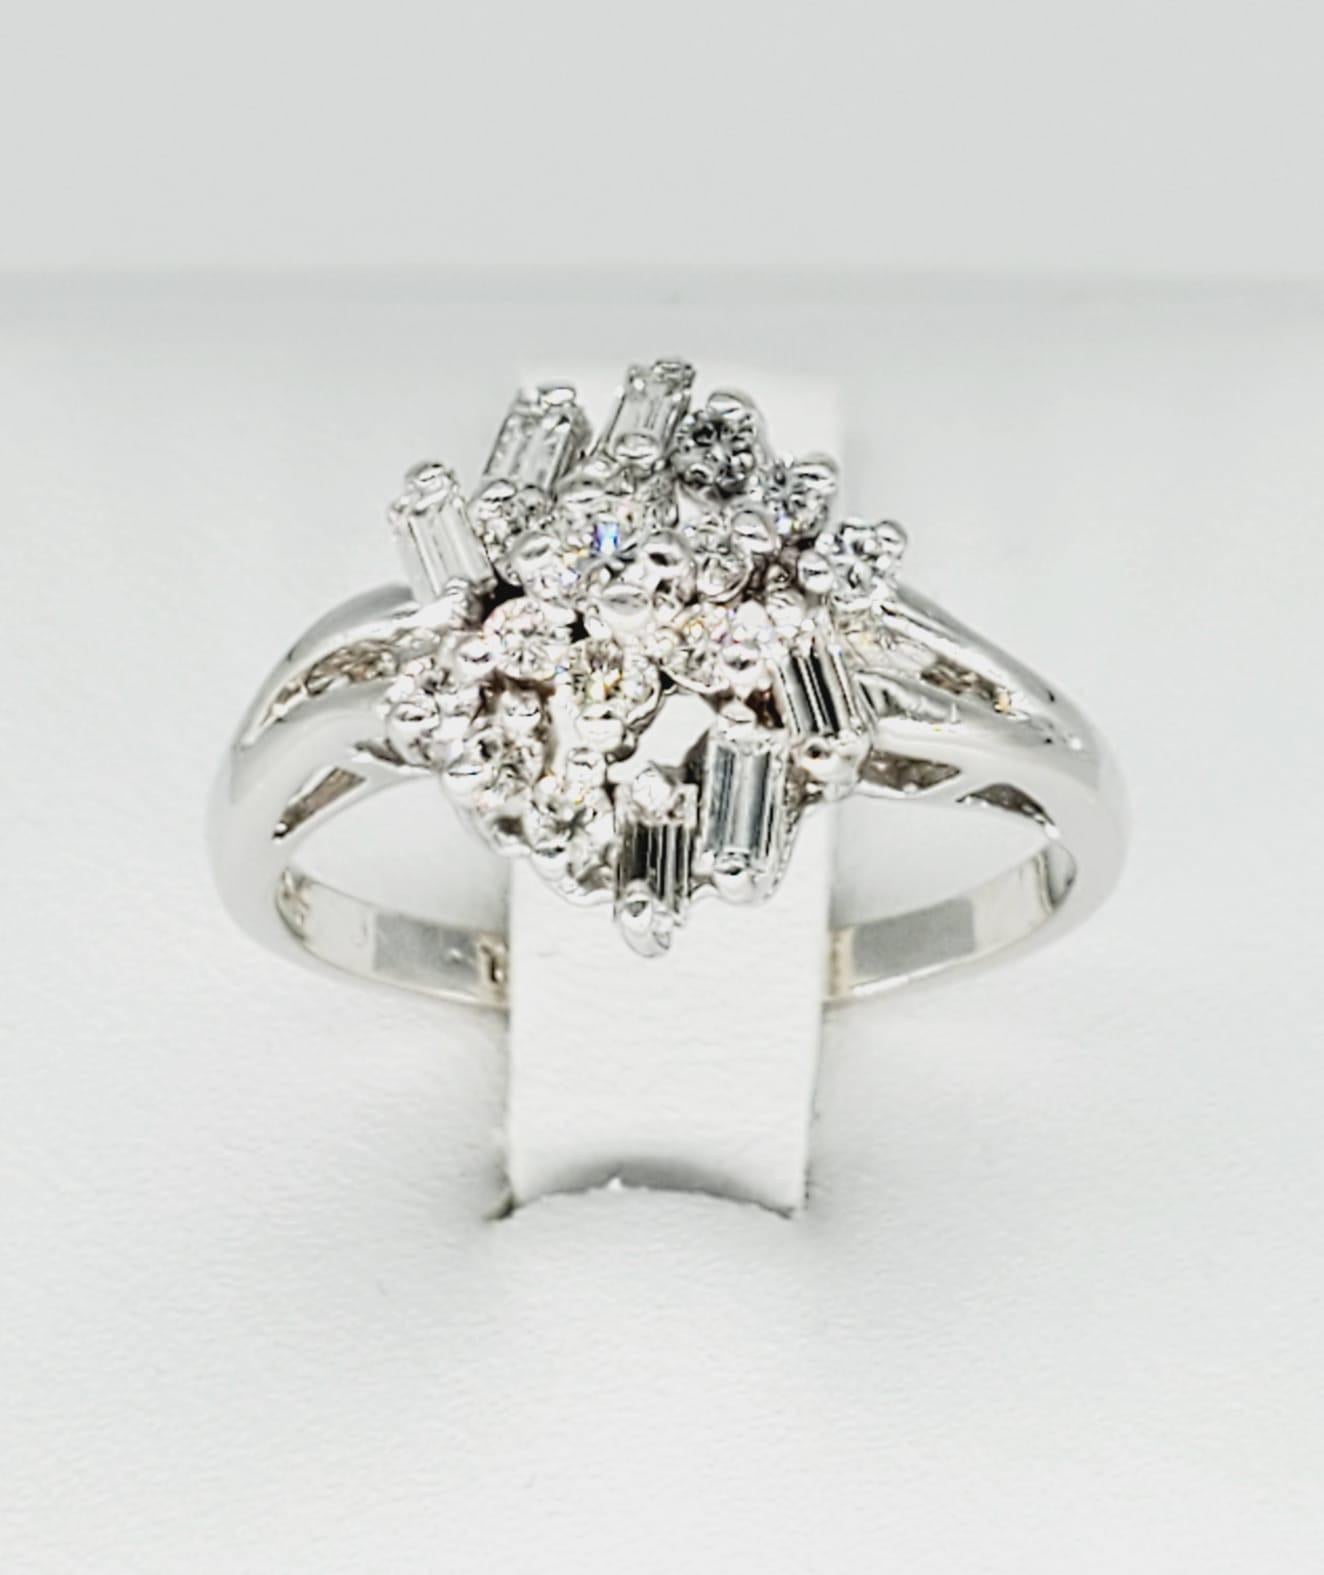 Vintage Assorted White Diamonds Cluster 14k Gold Ring. Der Ring ist atemberaubend mit runden und Baguette-Diamanten rundherum ausgestattet. Die runden Diamanten wiegen ca. 0,35 Karat und die Baguettes ca. 0,40 Karat. Die Diamanten haben die Qualität